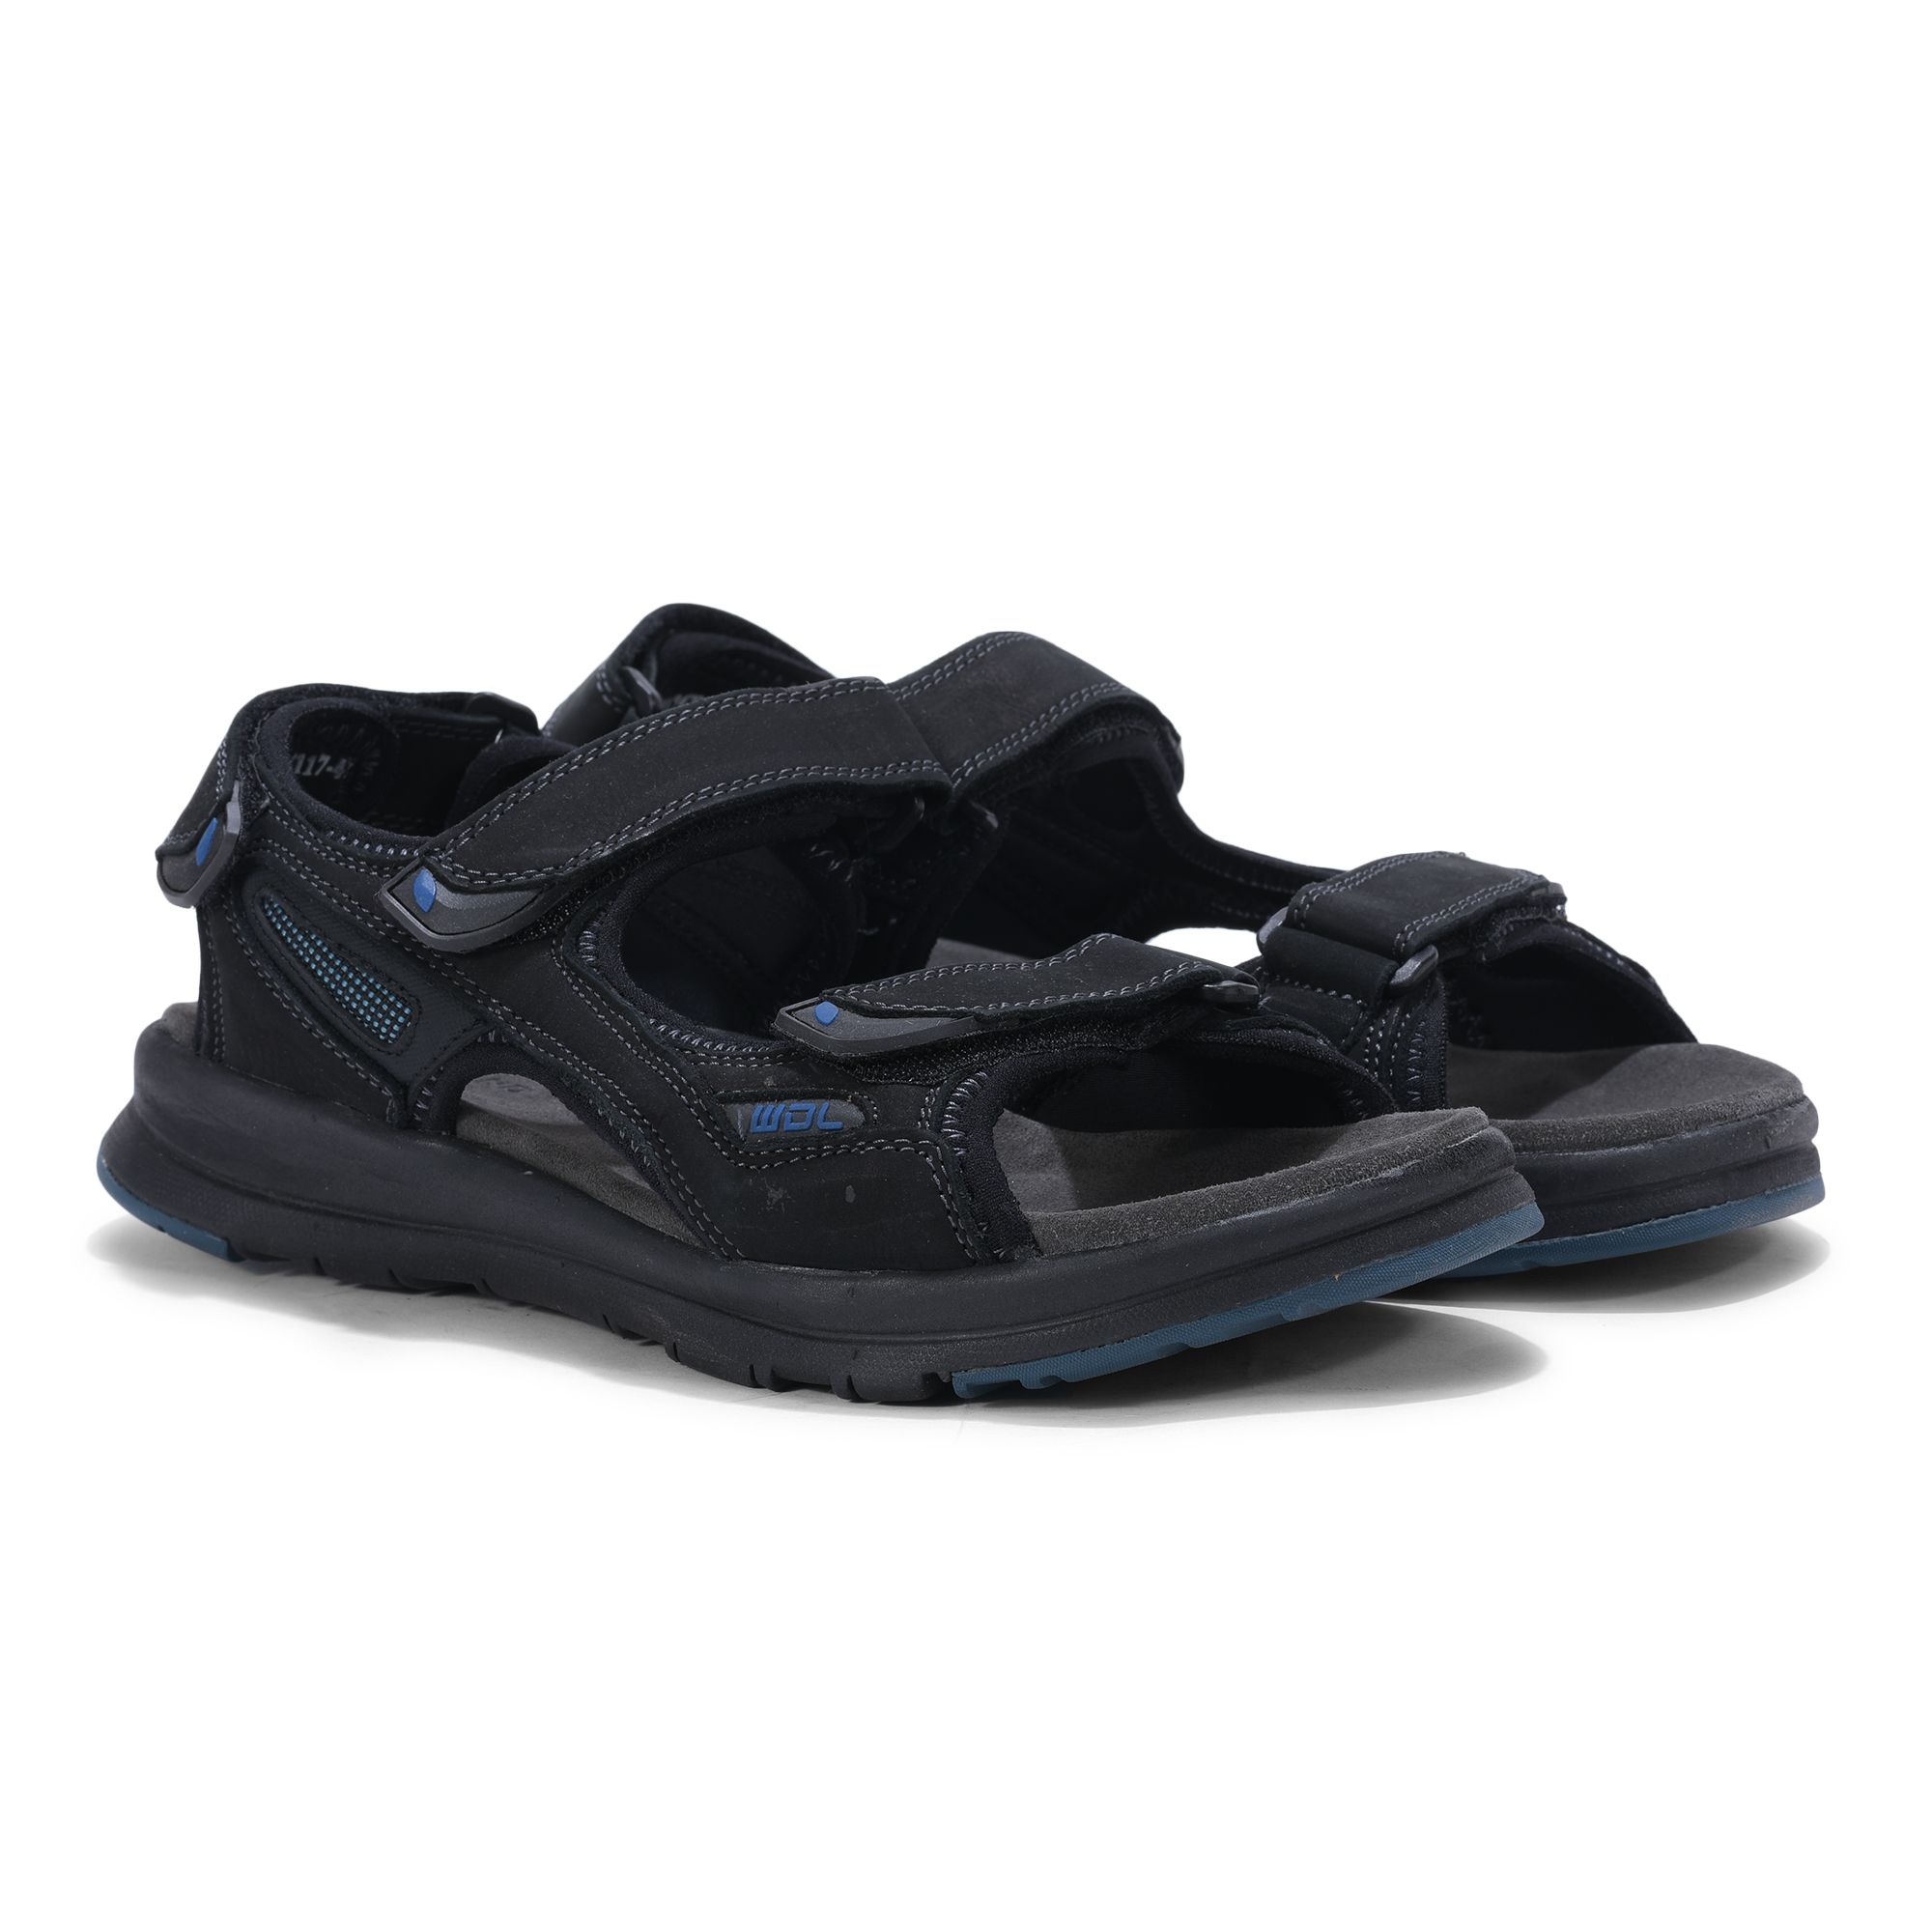 Black floater sandal for men